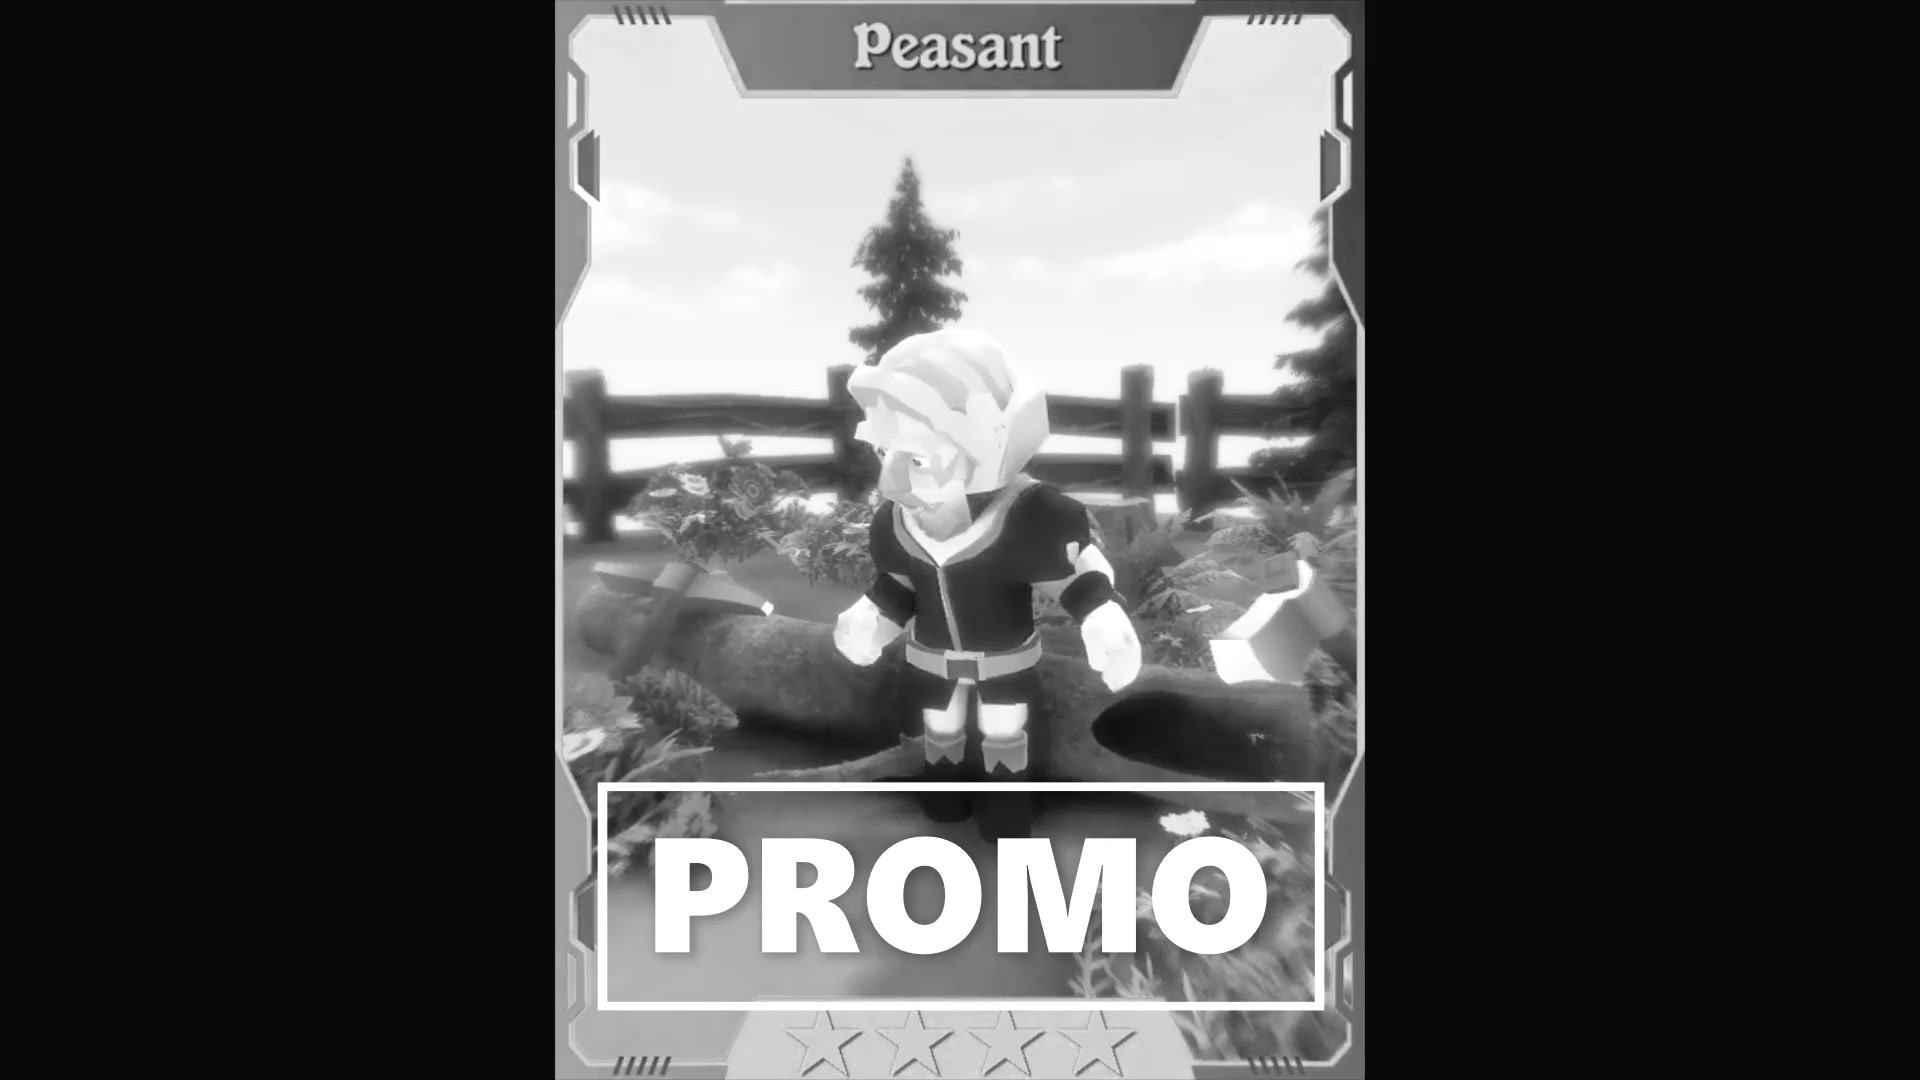 human_peasant_promo.jpg